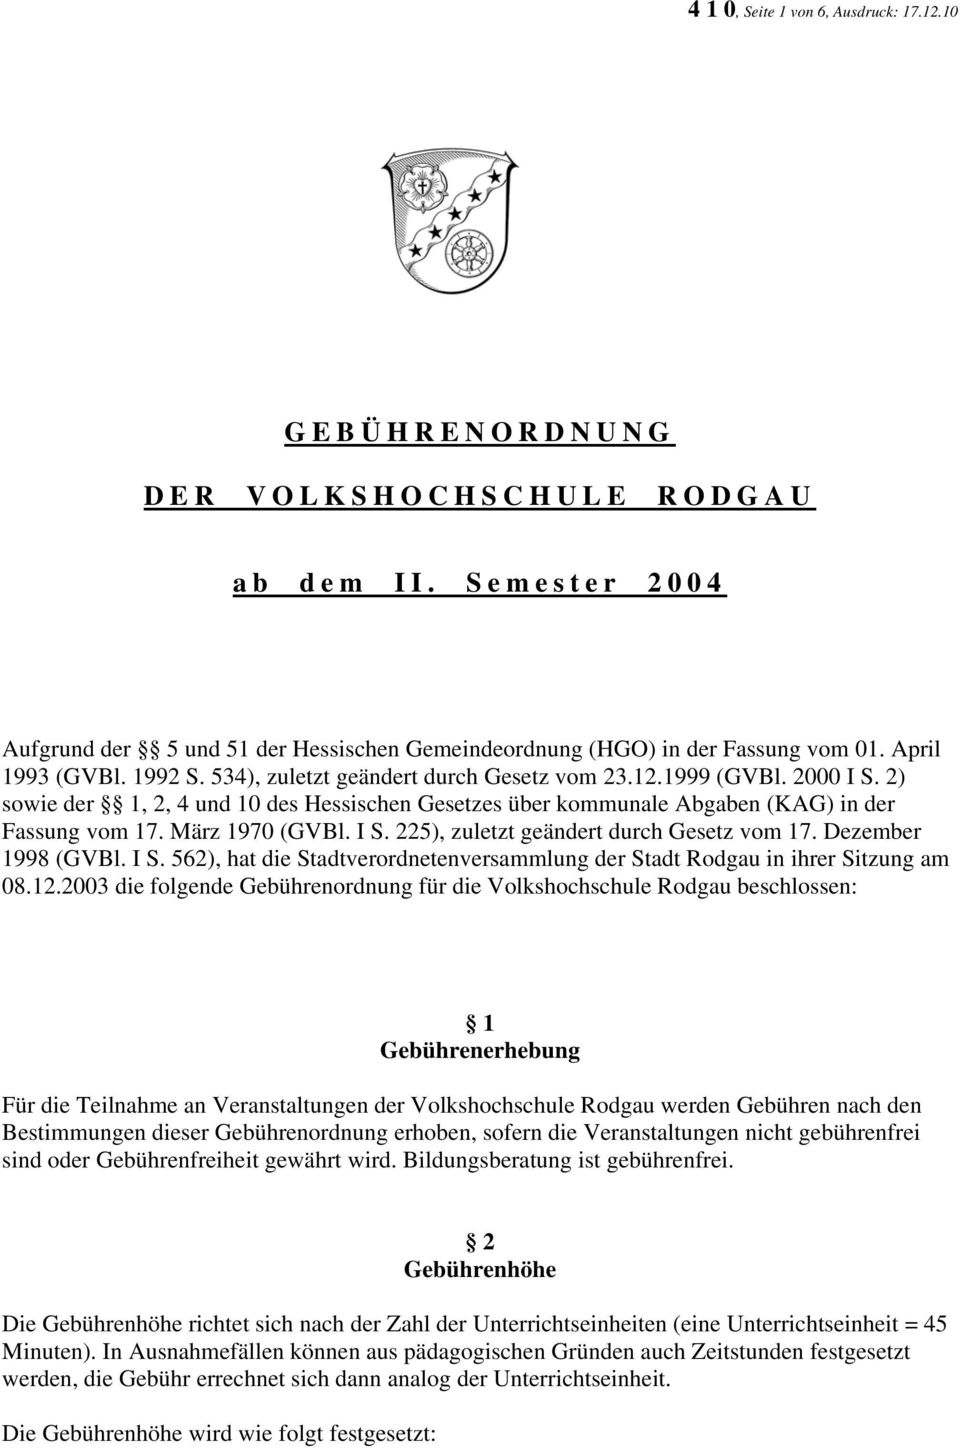 März 1970 (GVBl. I S. 225), zuletzt geändert durch Gesetz vom 17. Dezember 1998 (GVBl. I S. 562), hat die Stadtverordnetenversammlung der Stadt Rodgau in ihrer Sitzung am 08.12.